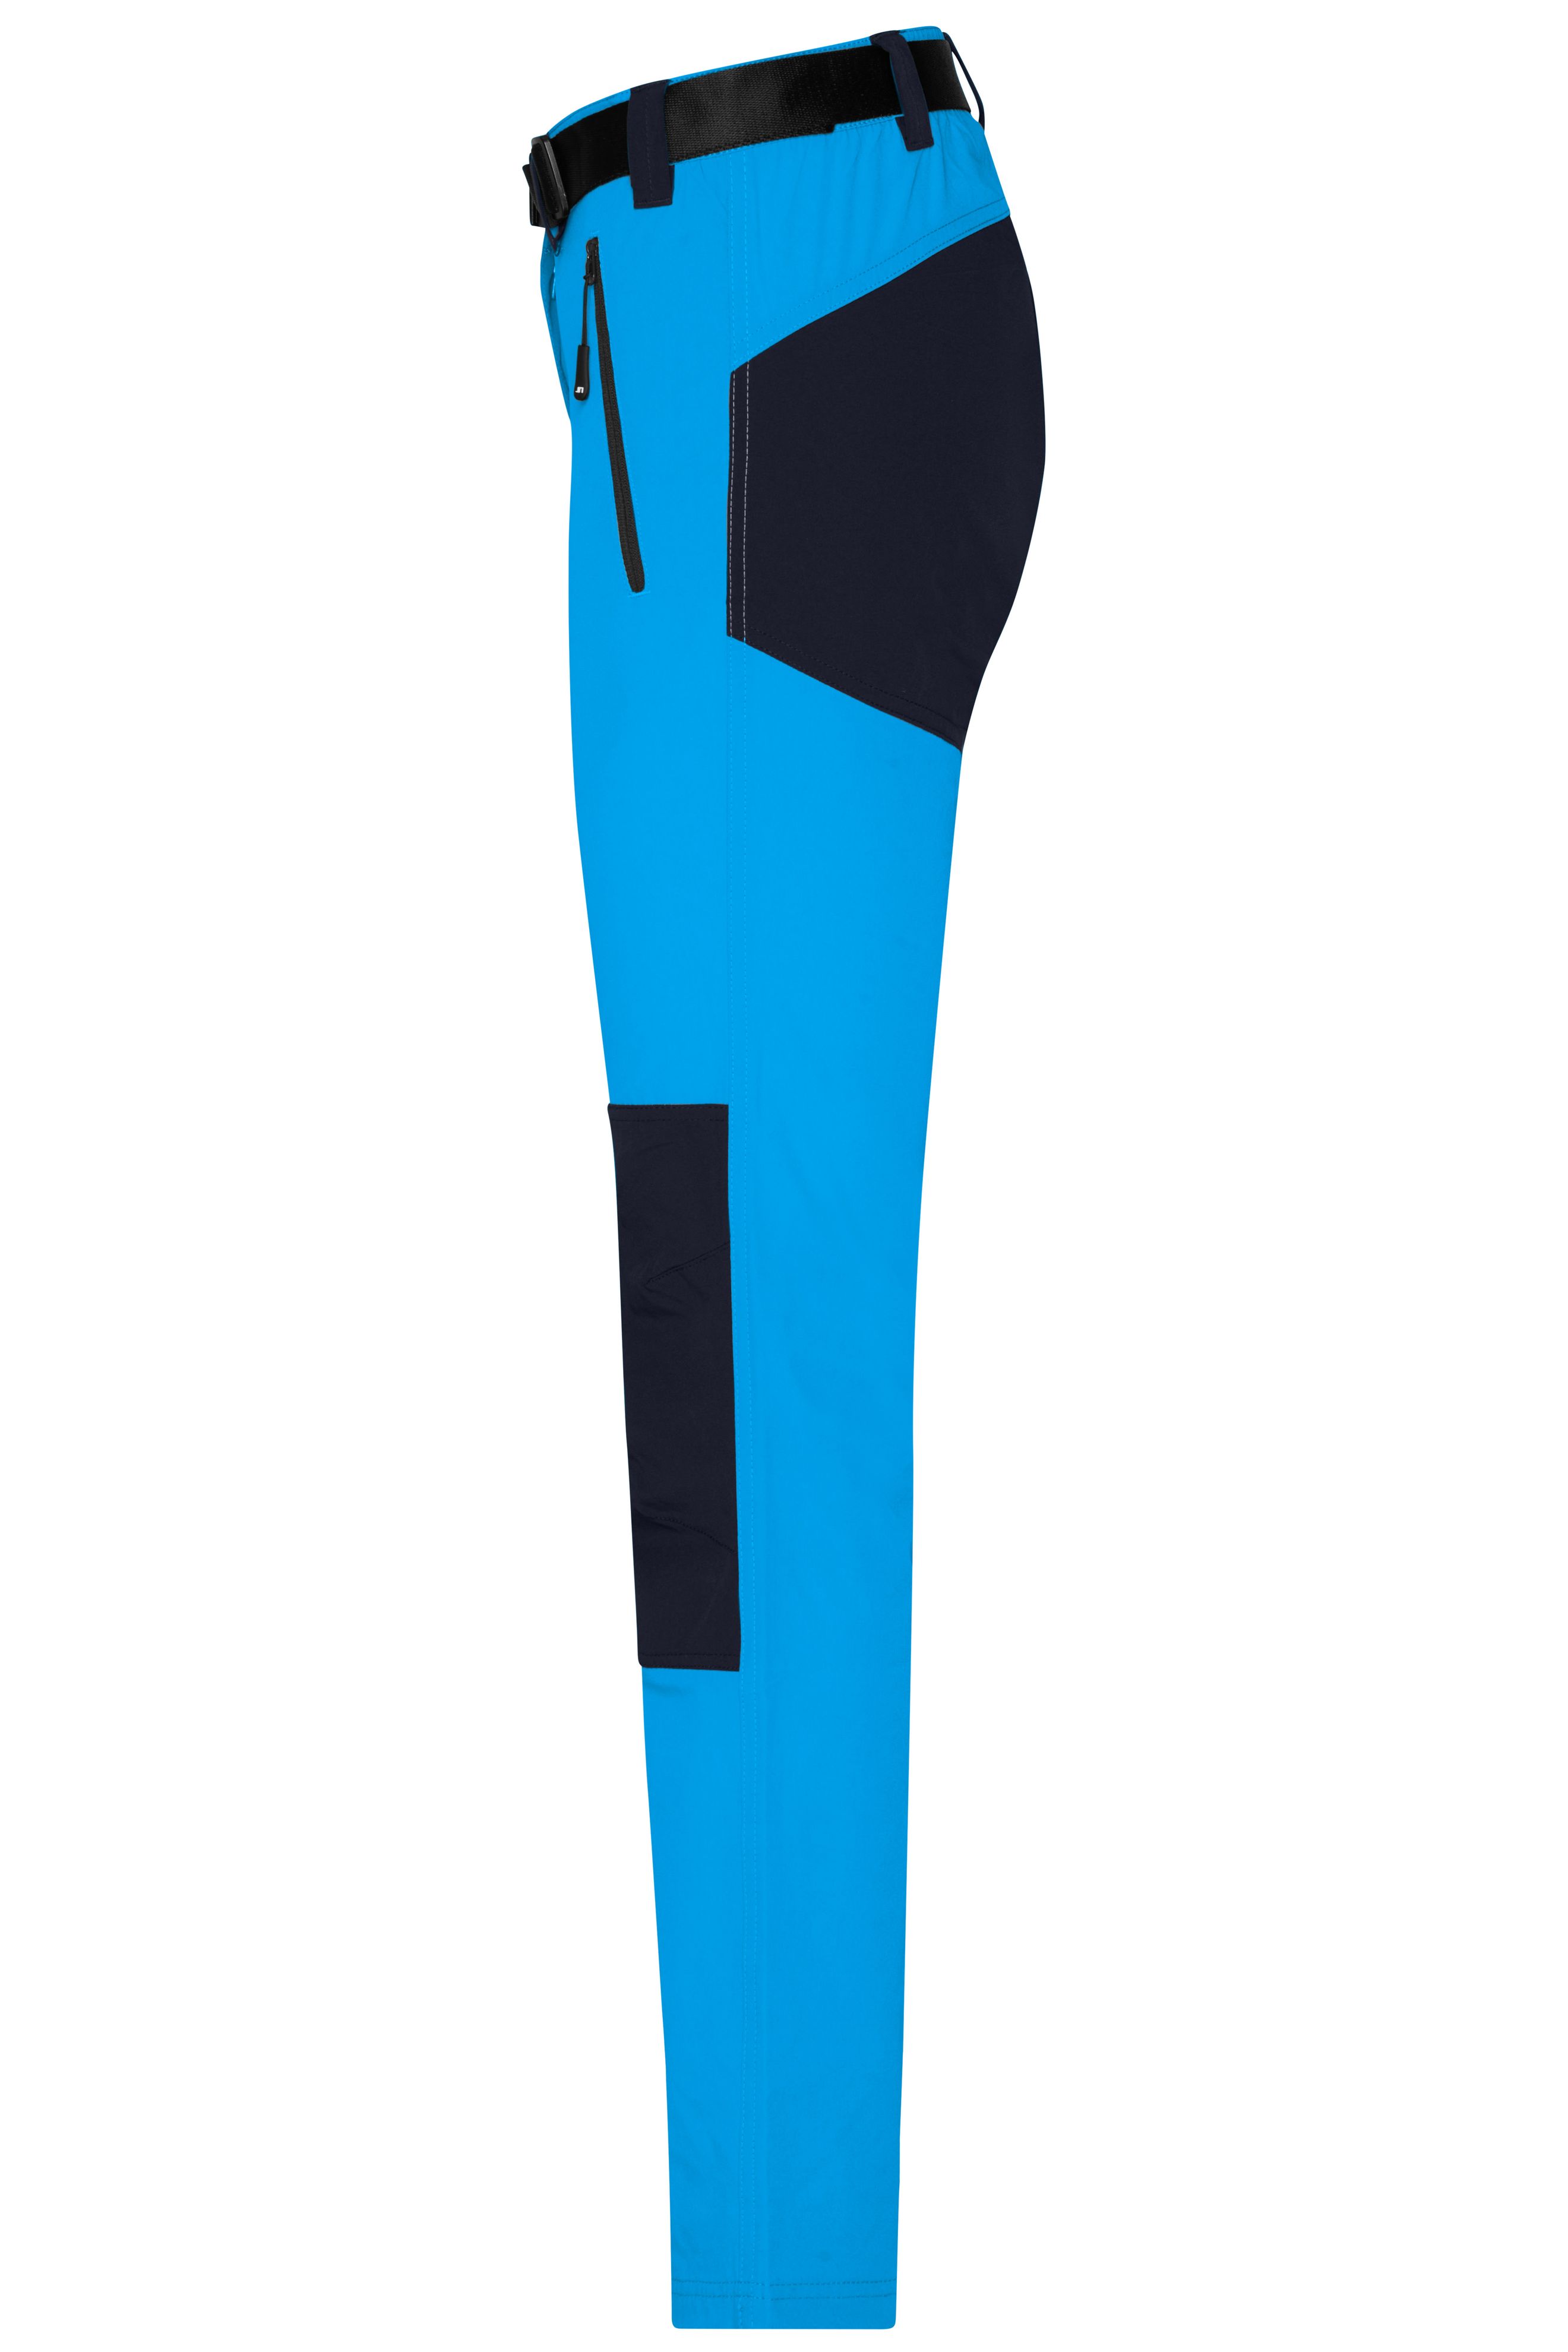 Ladies' Trekking Pants JN1205 Bi-elastische Outdoorhose in sportlicher Optik